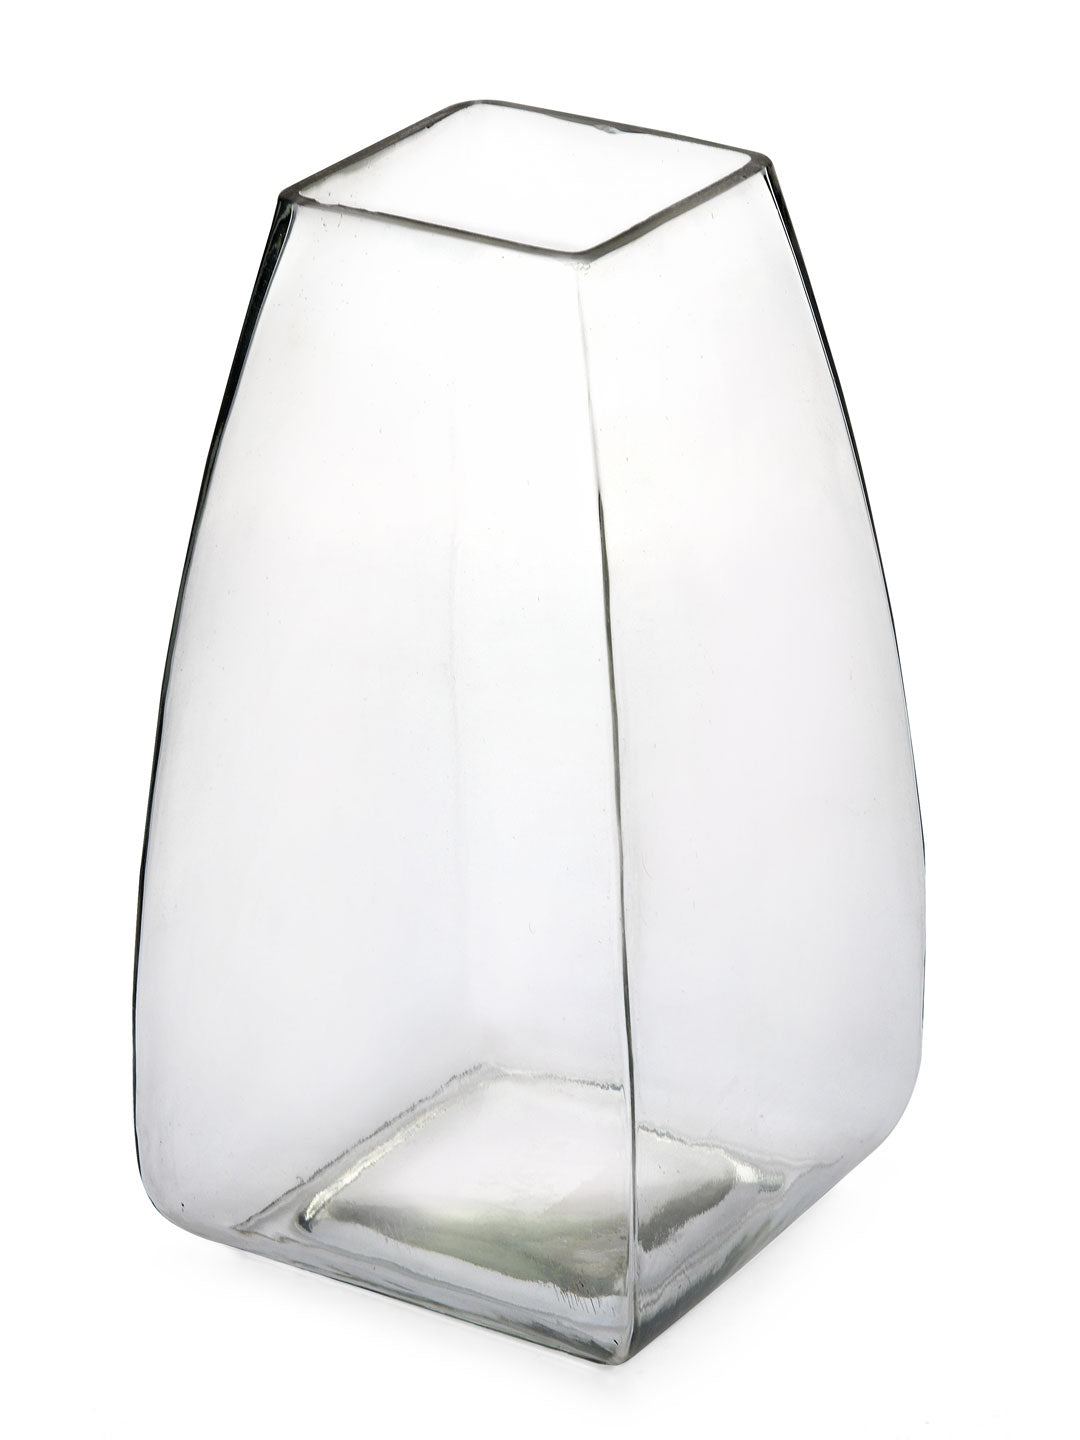 Trapeze Decorative Glass Table Vase (Transparent)